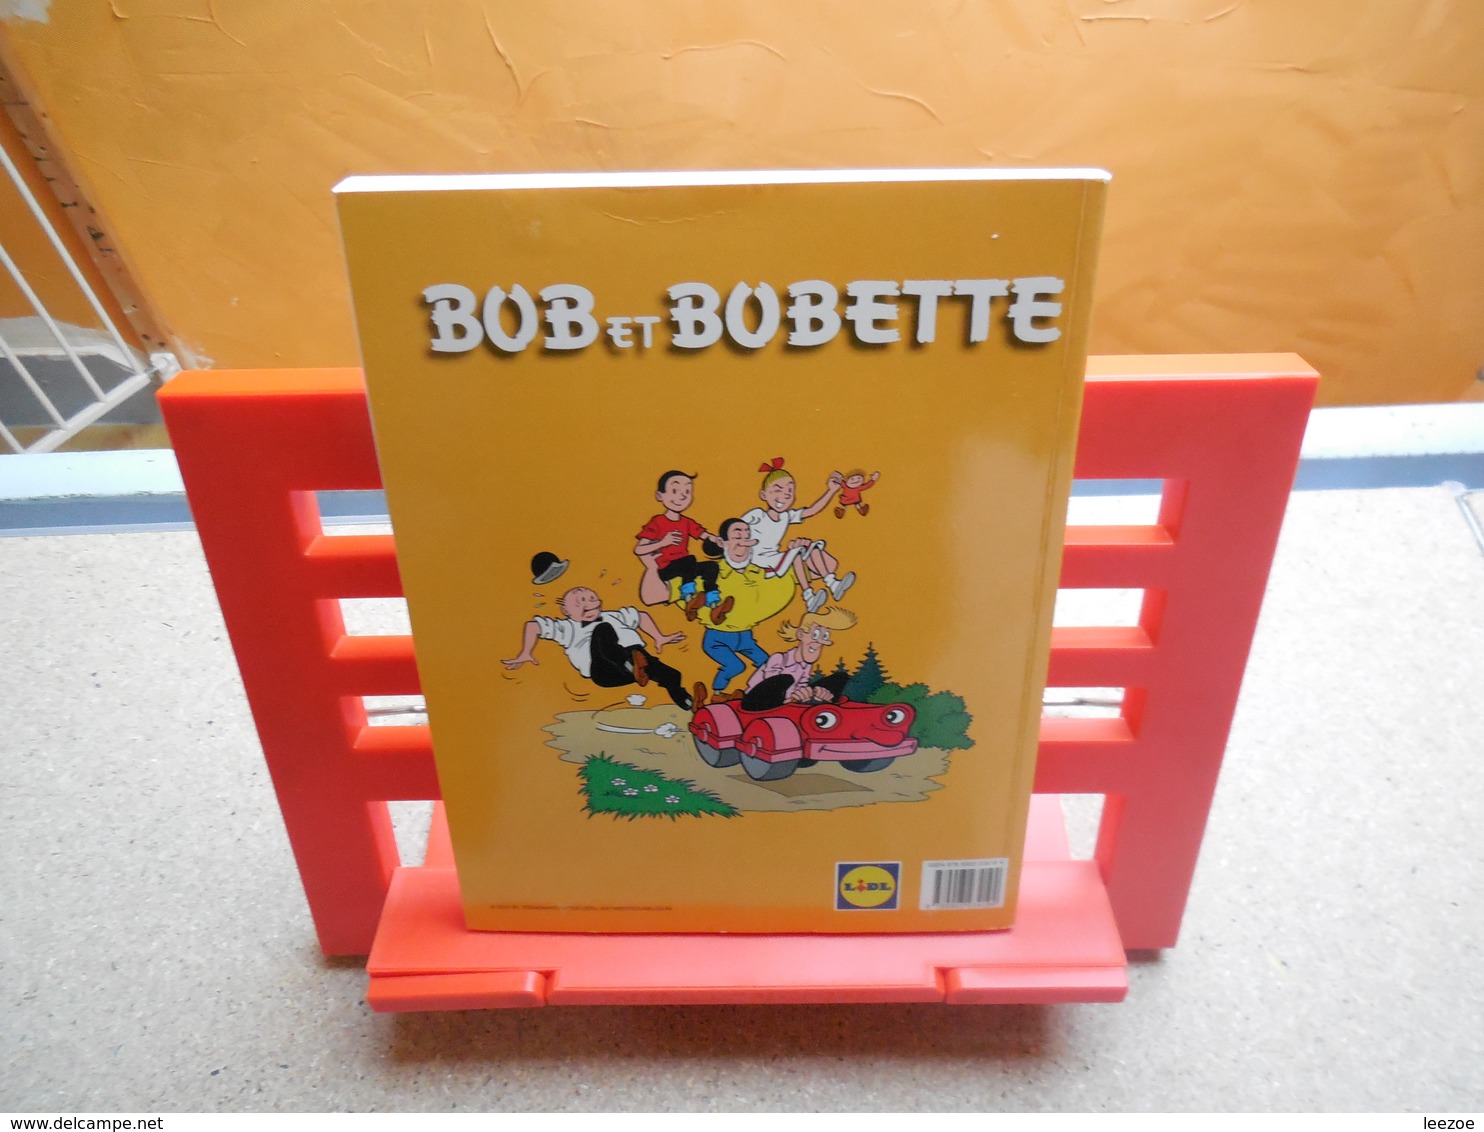 bd bob et bobette, albums publicitaires distribué par lidl................3A0420